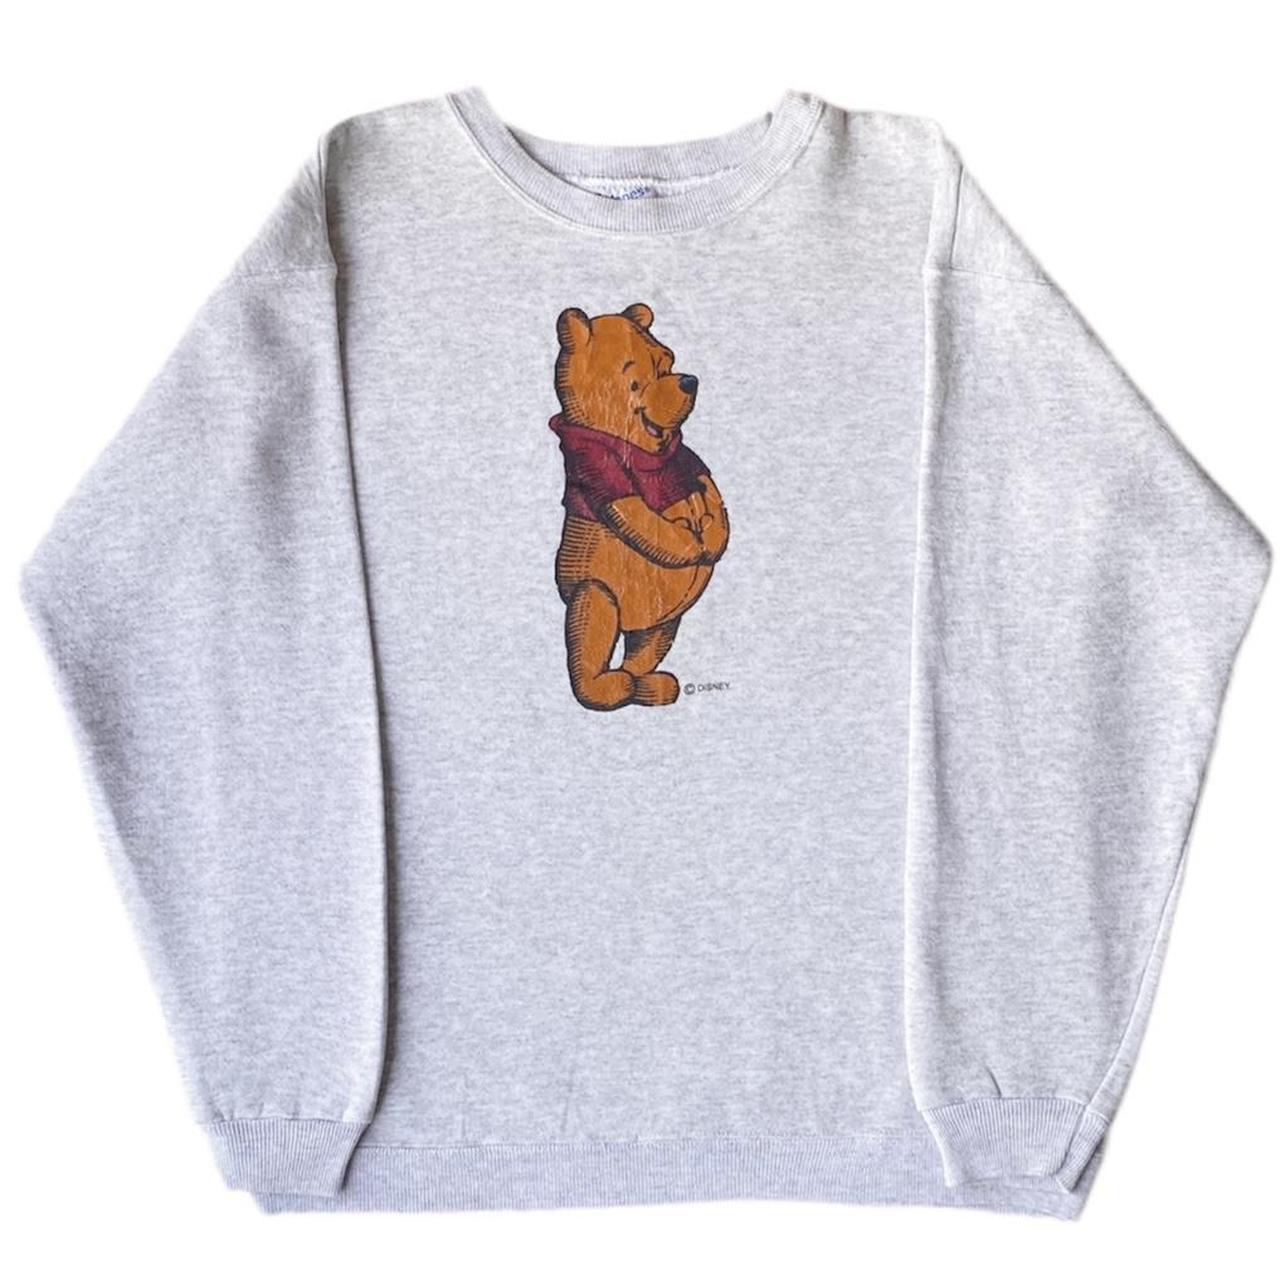 Vintage Winnie the Pooh 90s Sweatshirt - Made in... - Depop